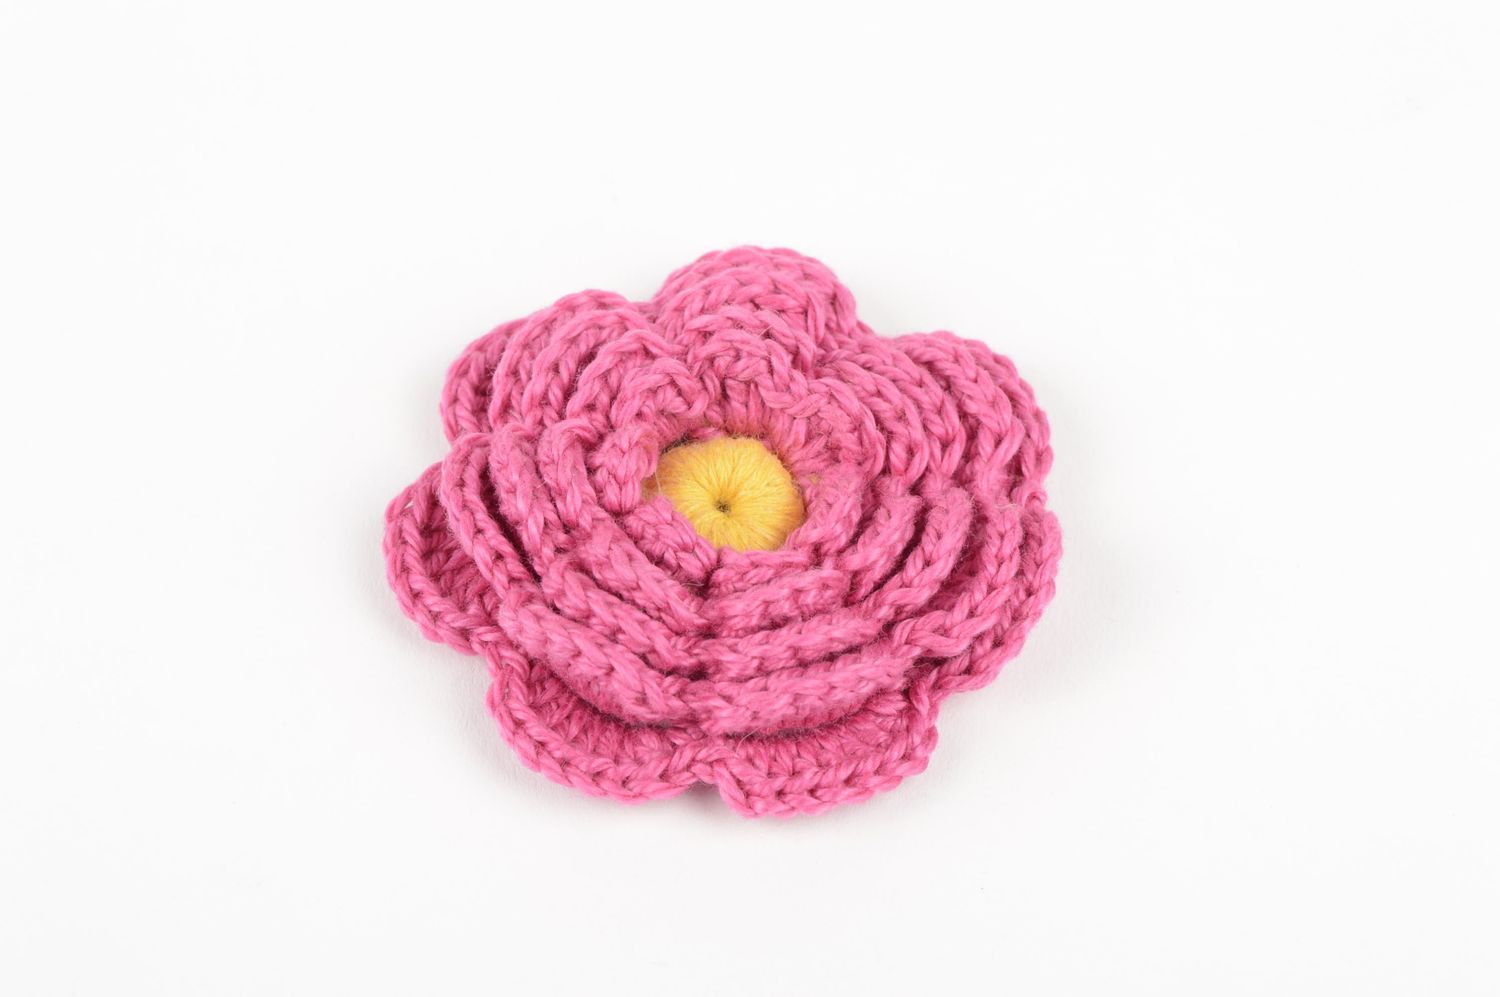 Unusual handmade crochet flower jewelry making supplies artisan jewelry photo 2